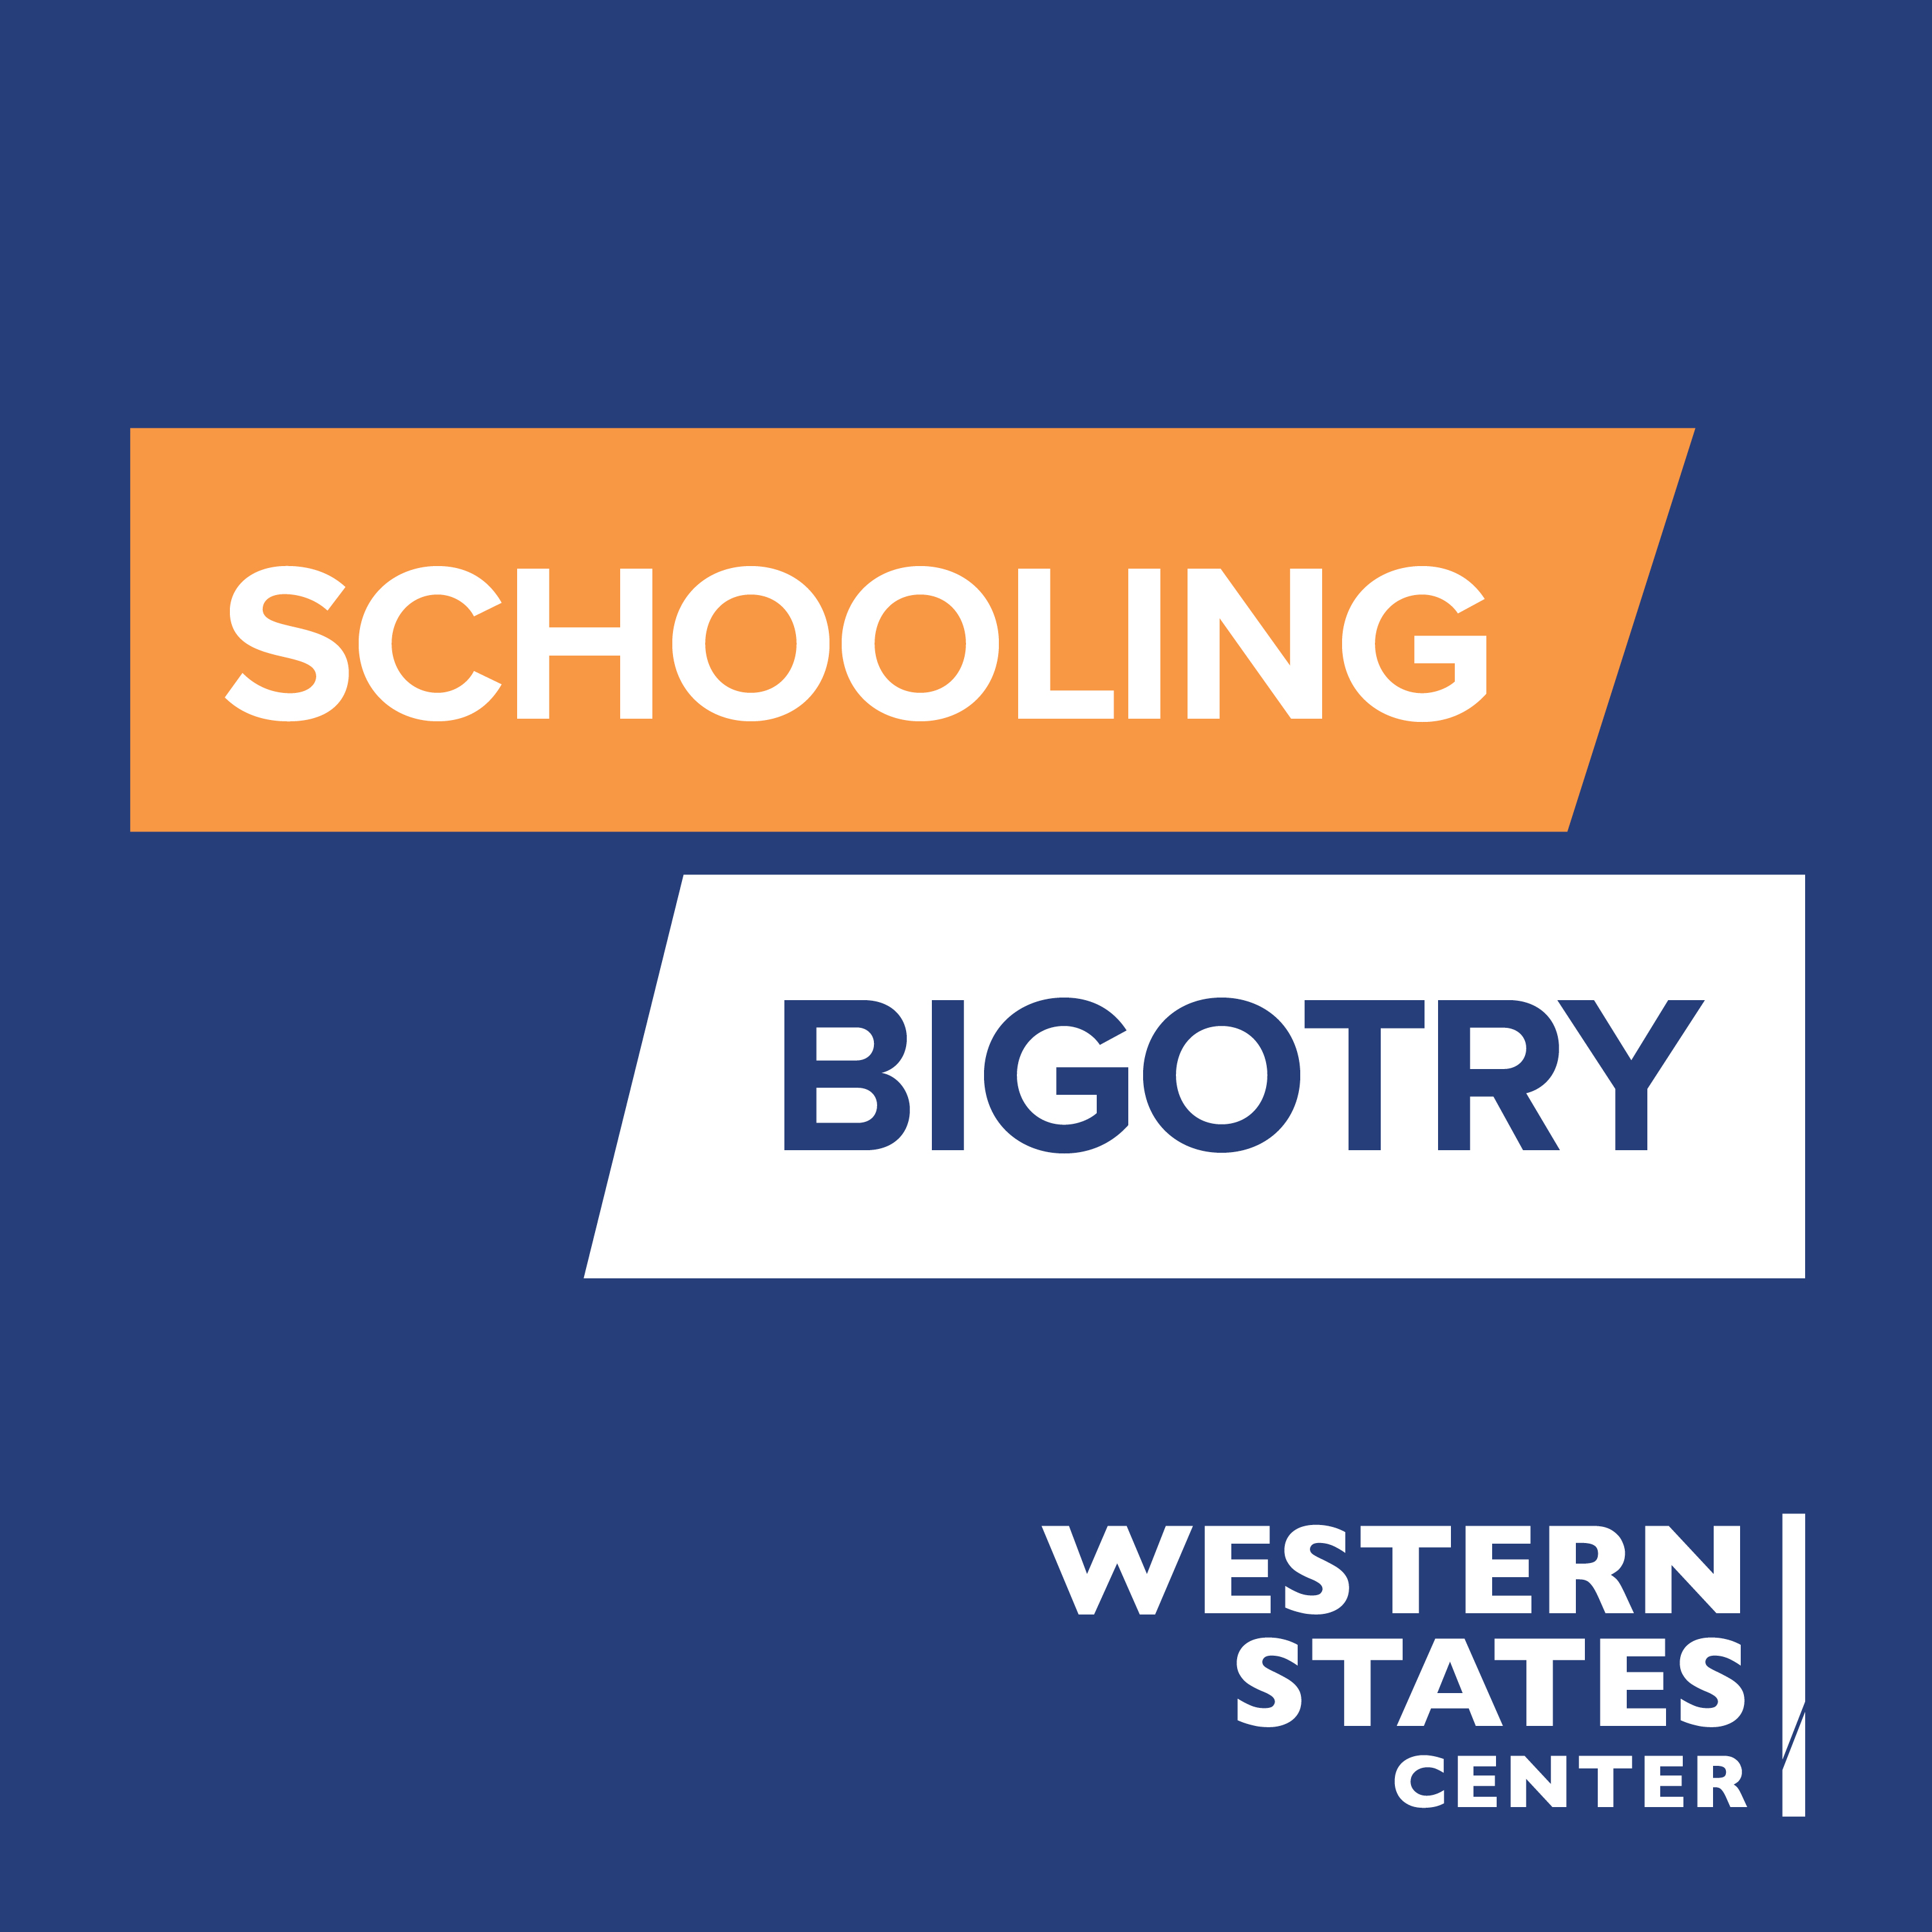 Artwork for Schooling Bigotry